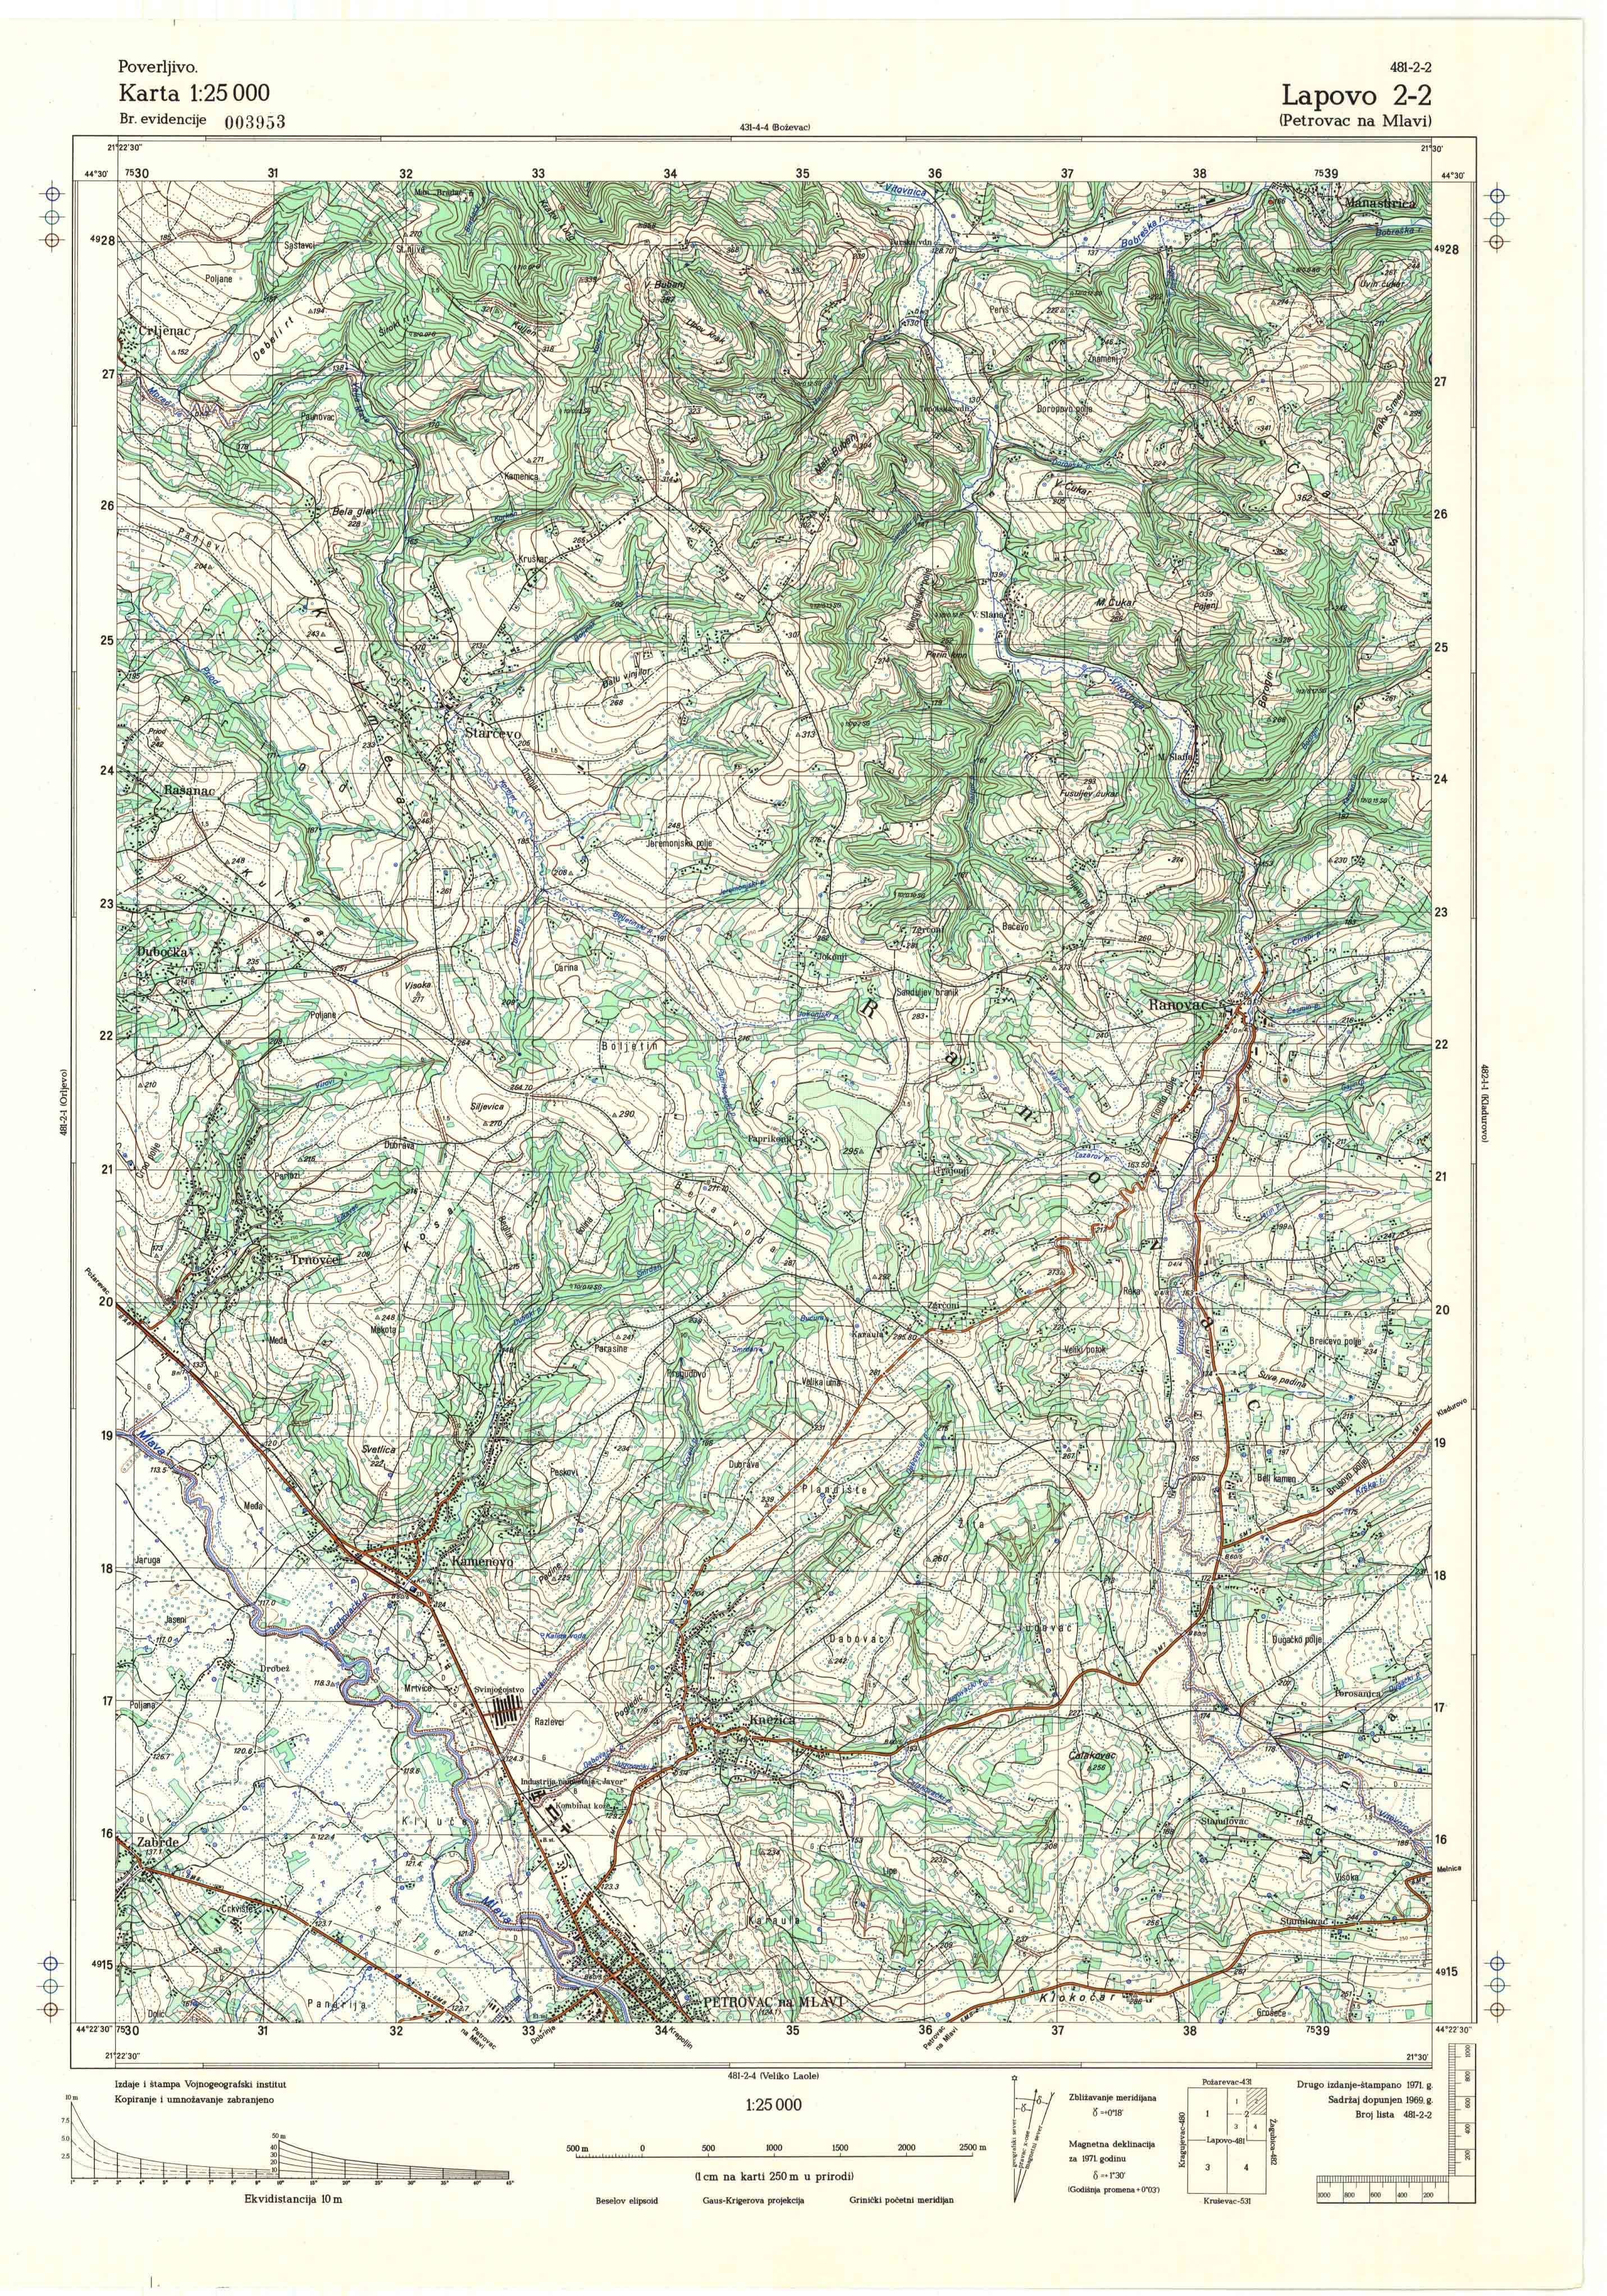  topografska karta srbije 25000 JNA  Lapovo